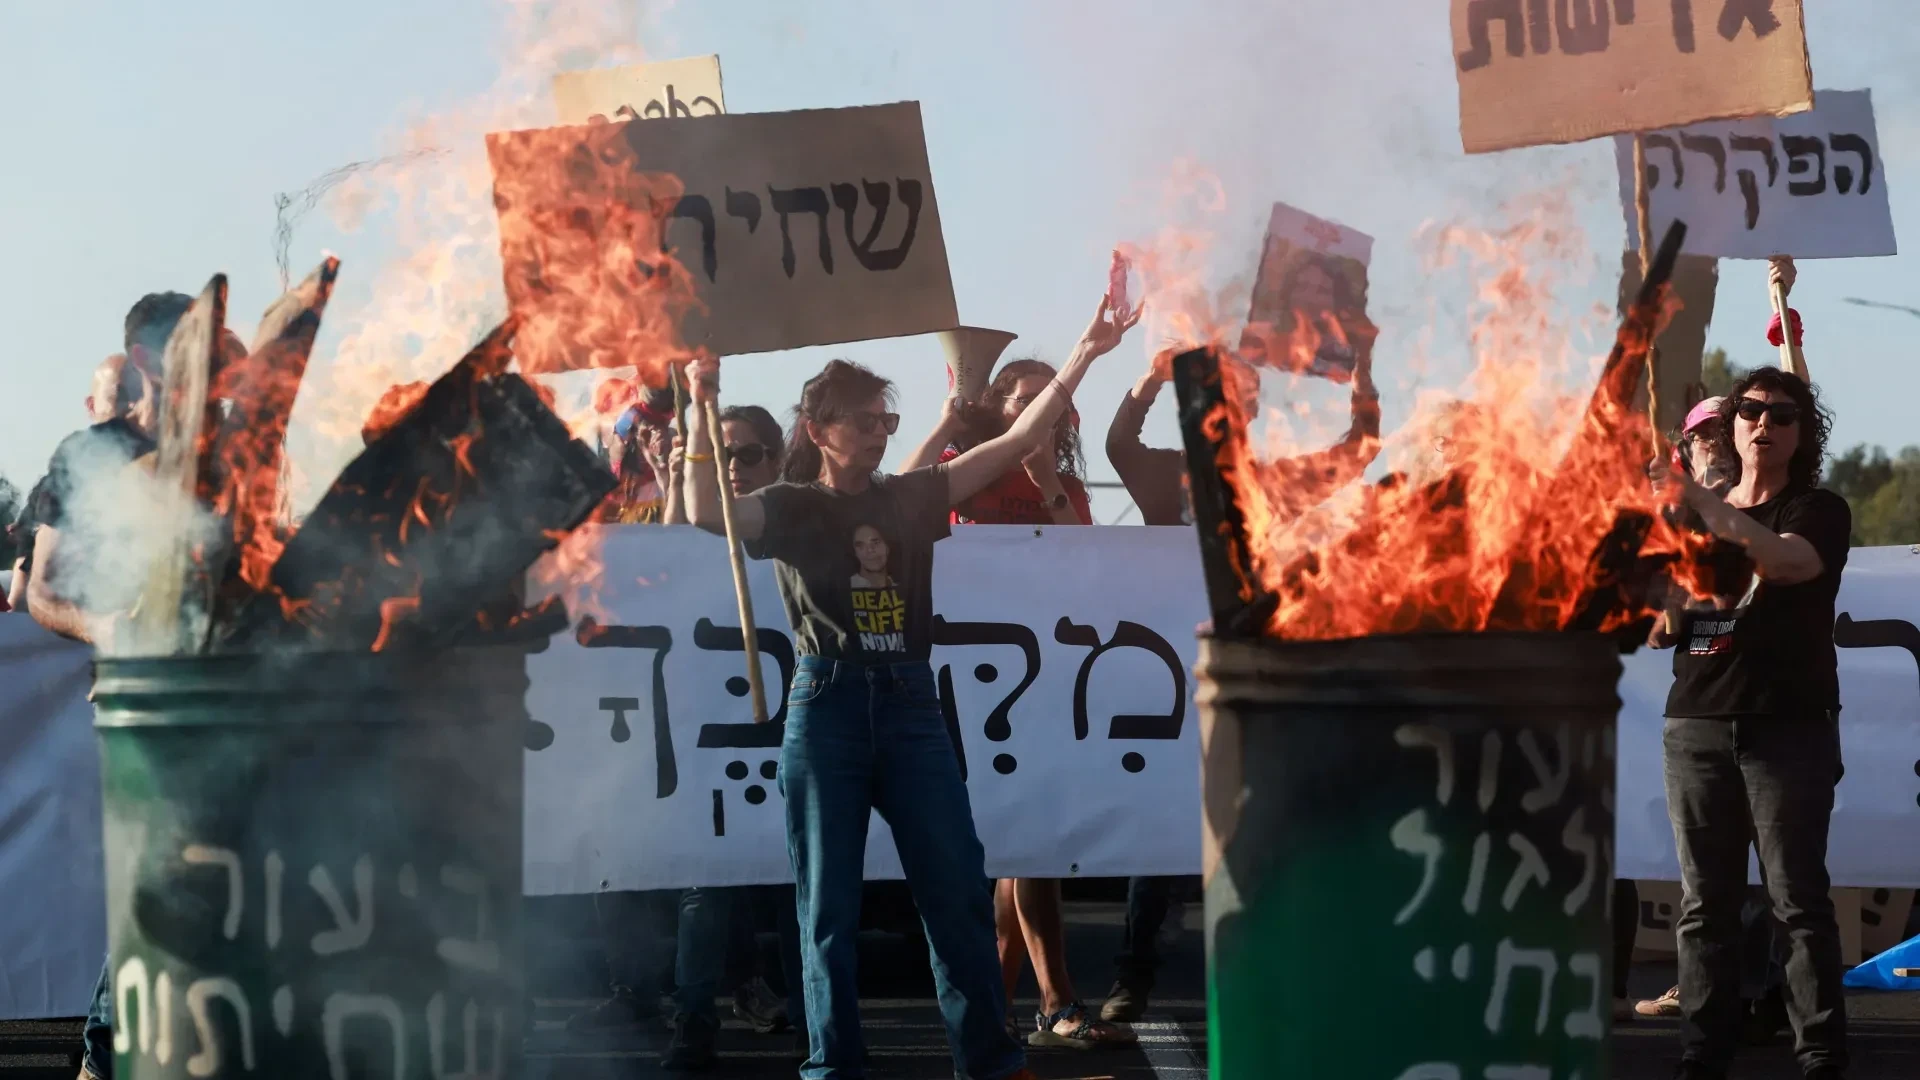 تظاهرات مناهضة لحكومة نتنياهو تؤدي لإغلاق طريق سريع في تل أبيب